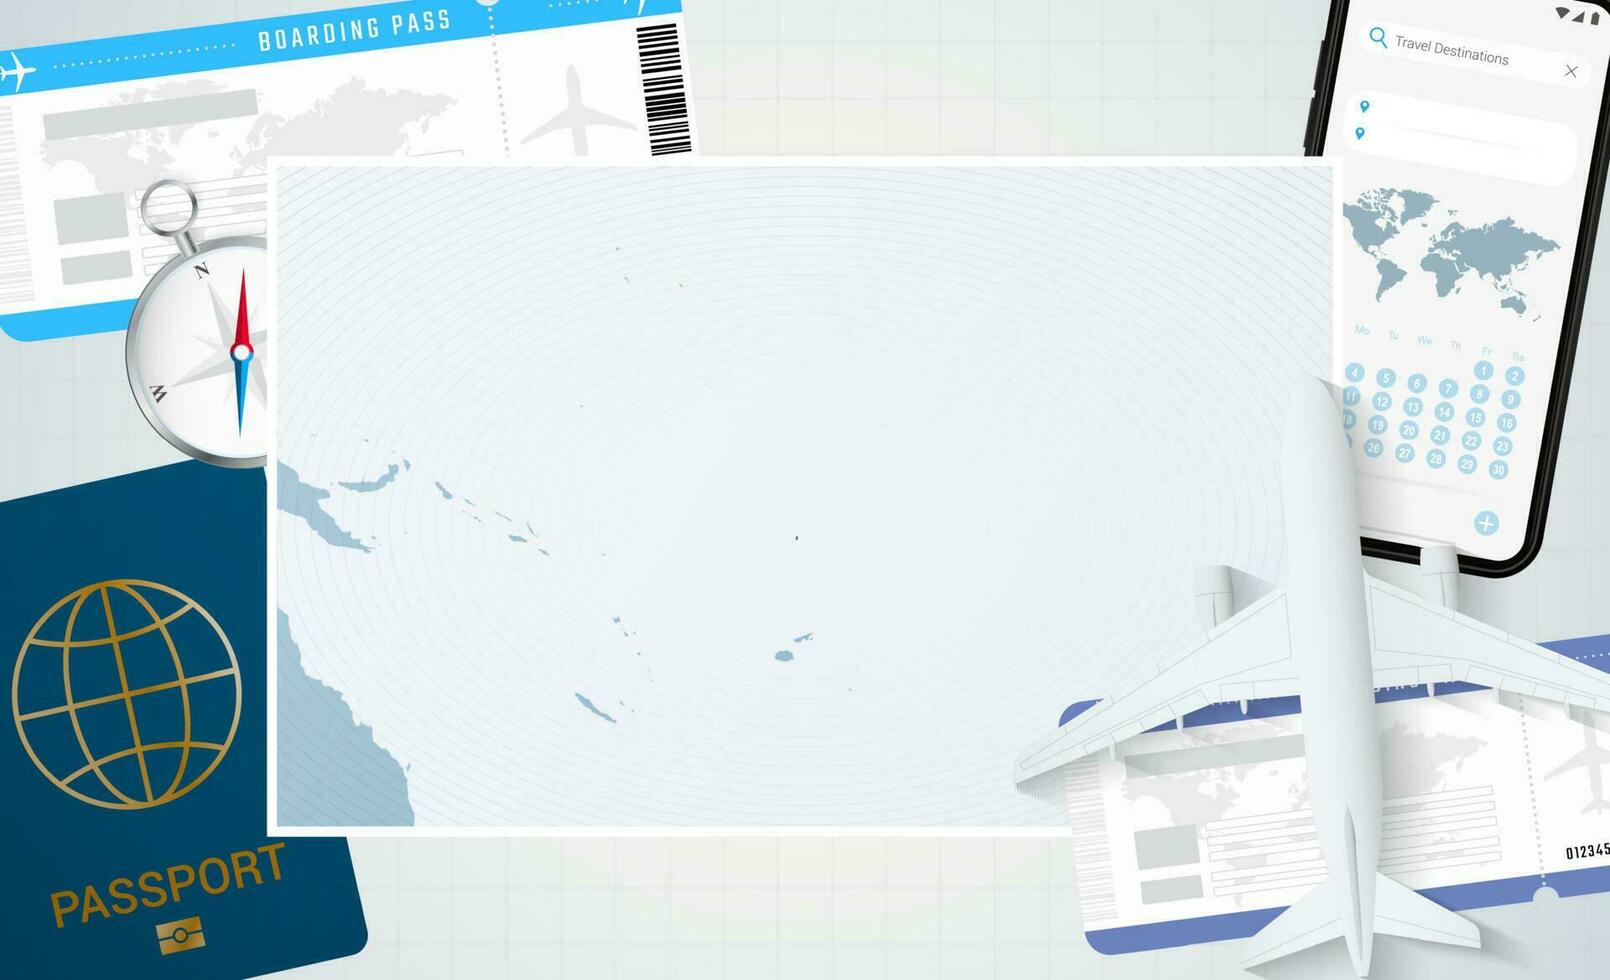 reis naar tuvalu, illustratie met een kaart van tuvalu. achtergrond met vliegtuig, cel telefoon, paspoort, kompas en kaartjes. vector